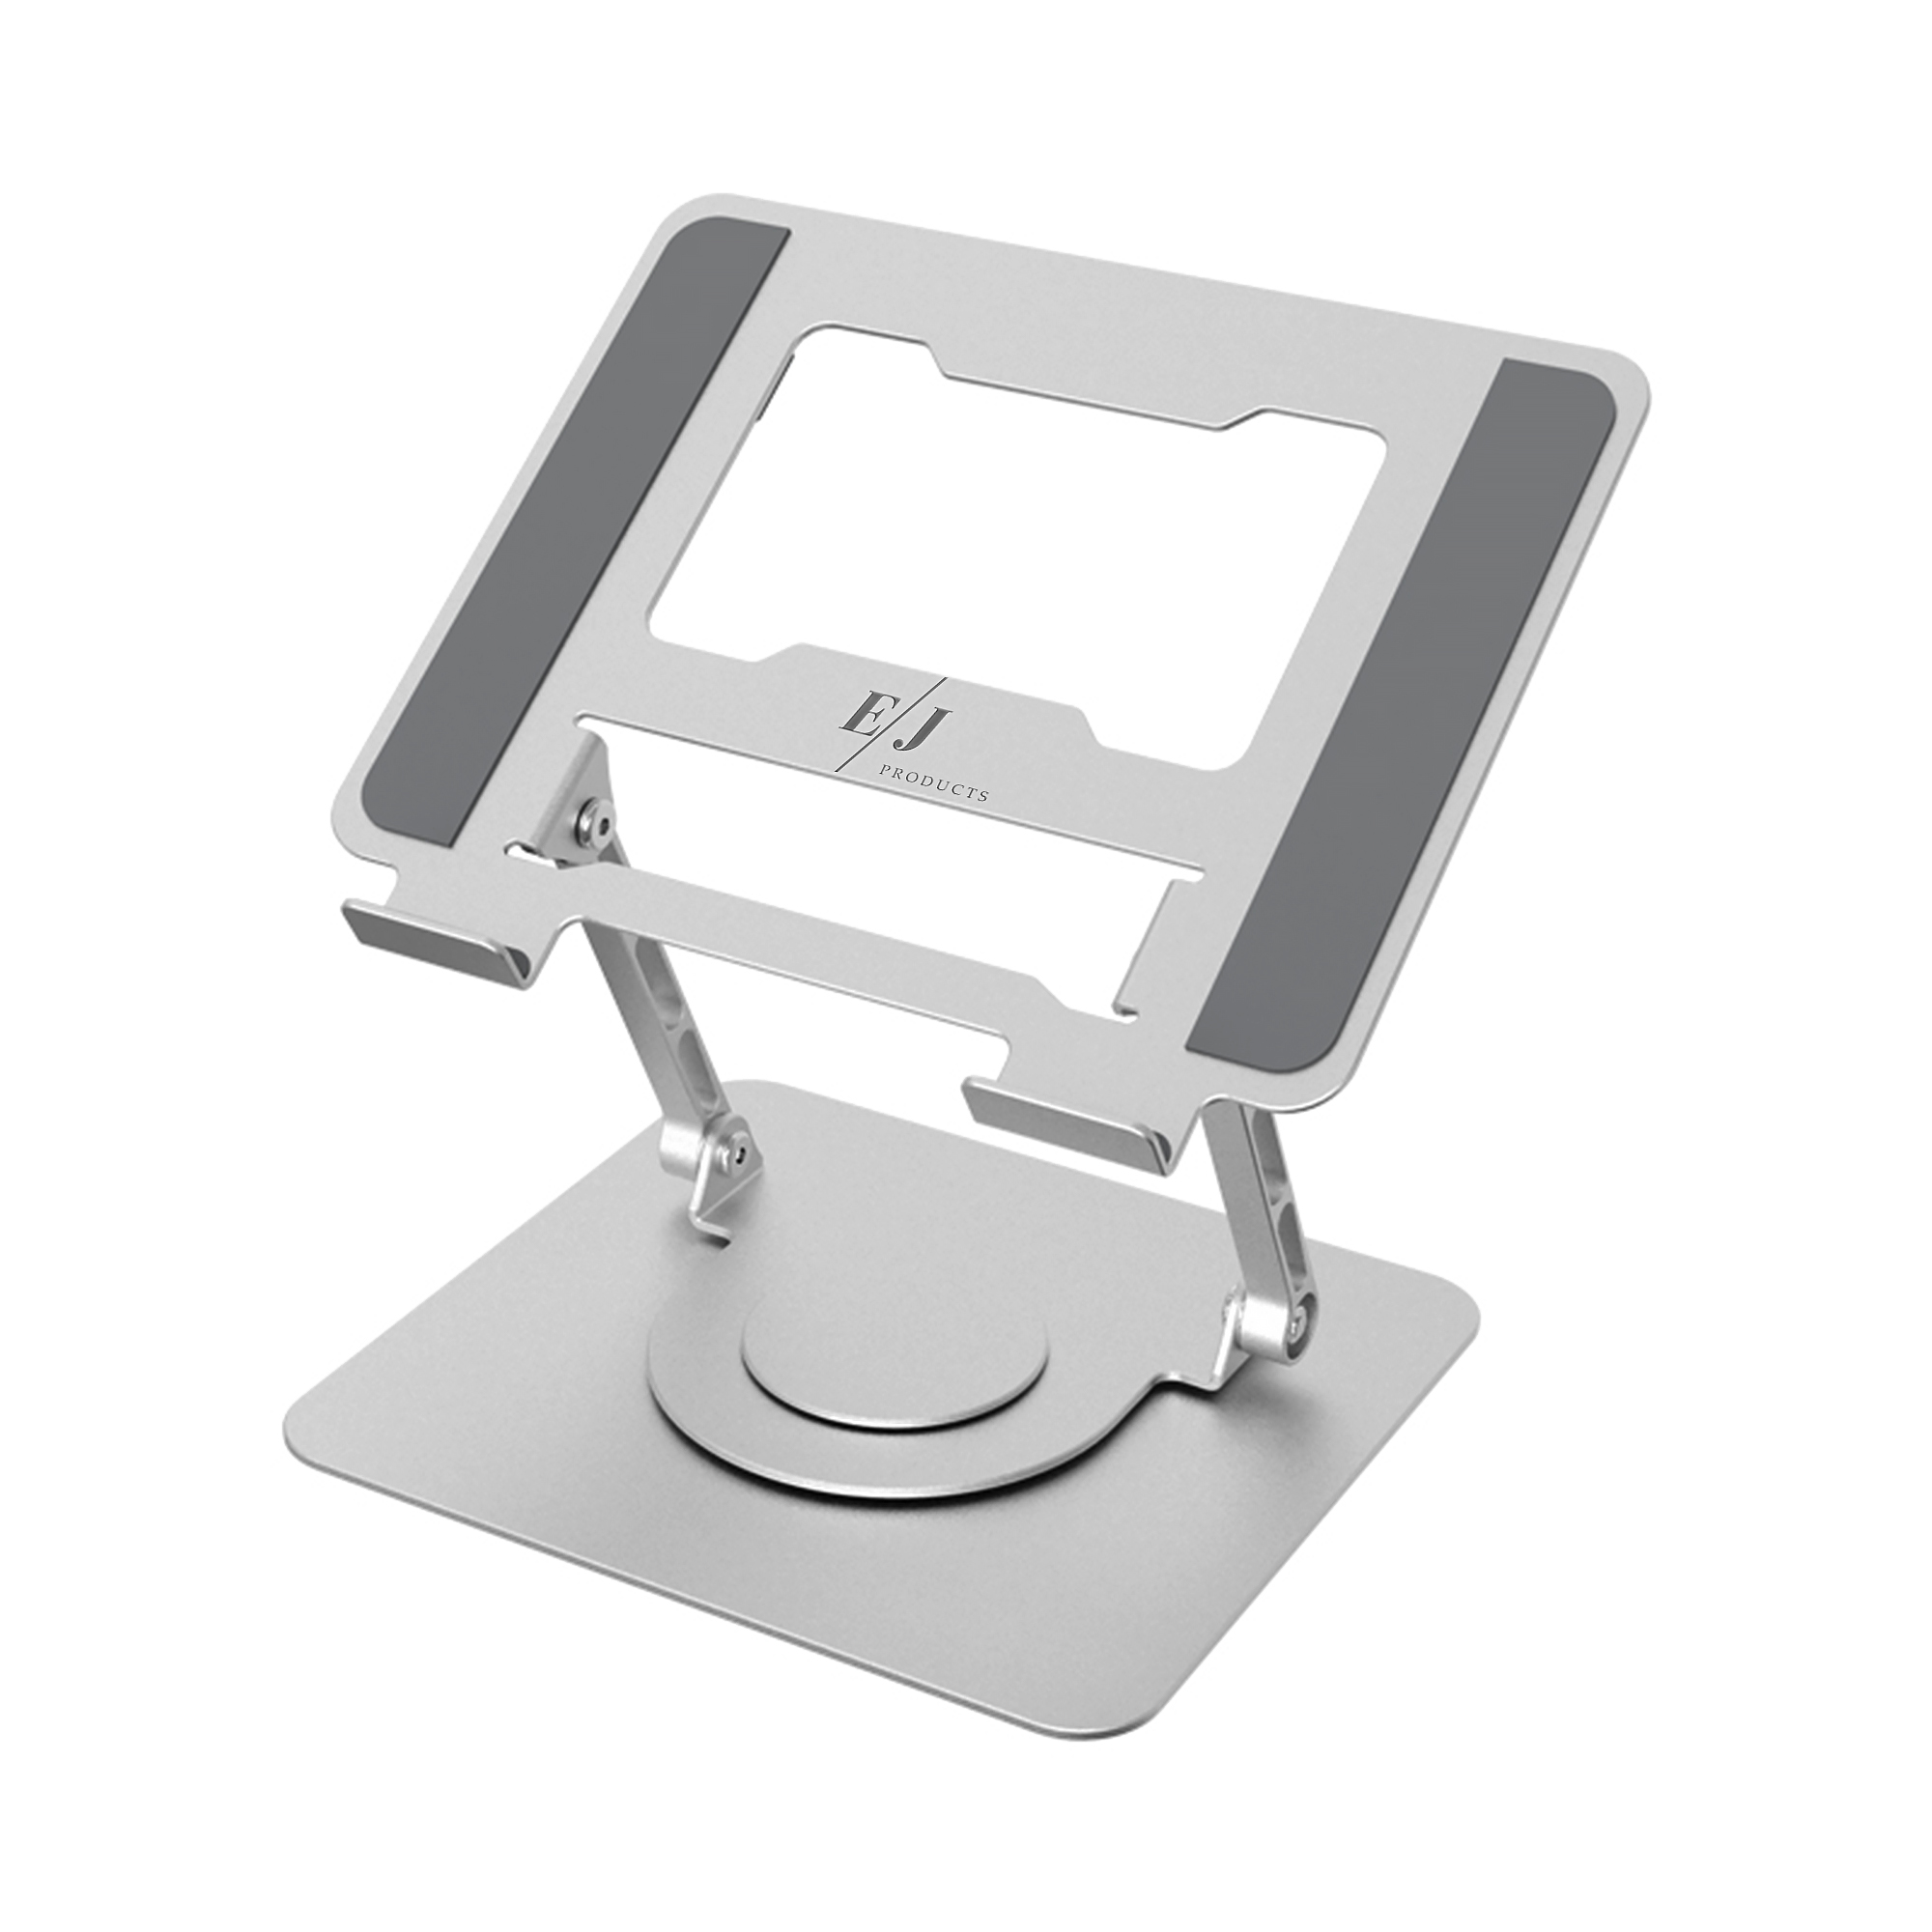 Stand multifunctional pentru laptop reglabil pe inaltime, fabricat din aluminiu, pliabil la 360 de grade, ergonomic si portabil, EJ PRODUCTS 360 imagine noua idaho.ro